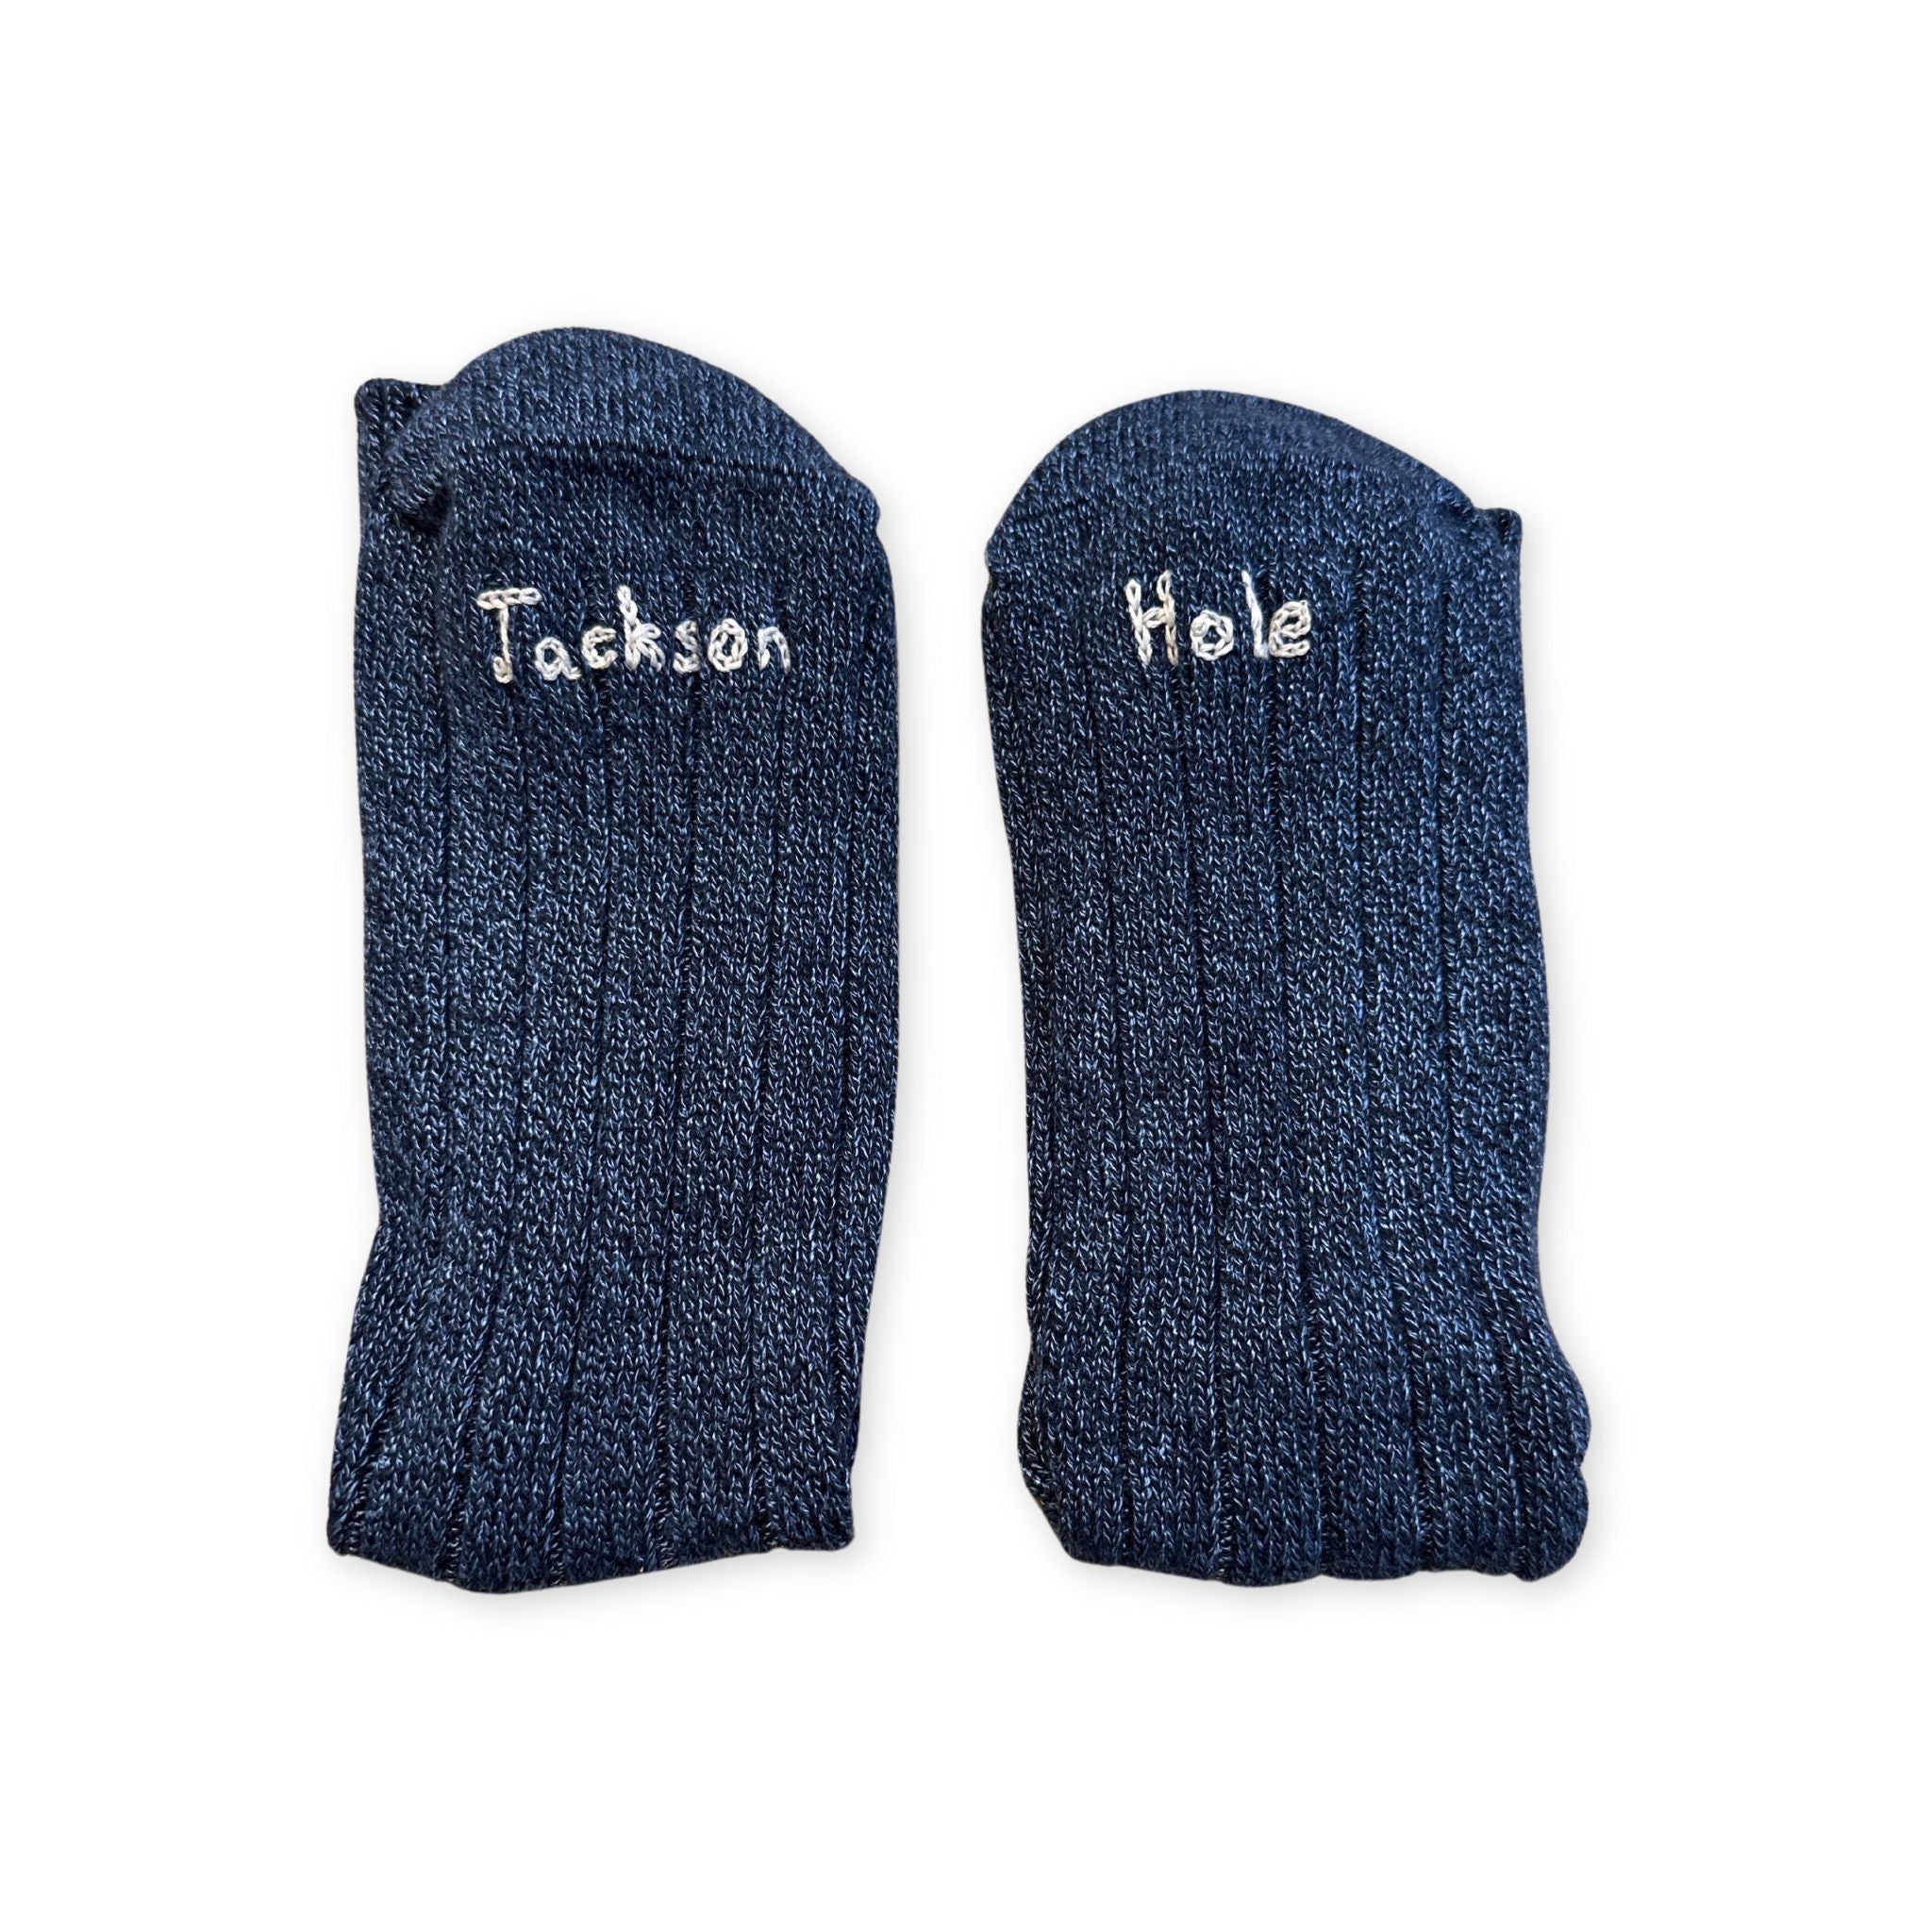 Jackson Hole Socks